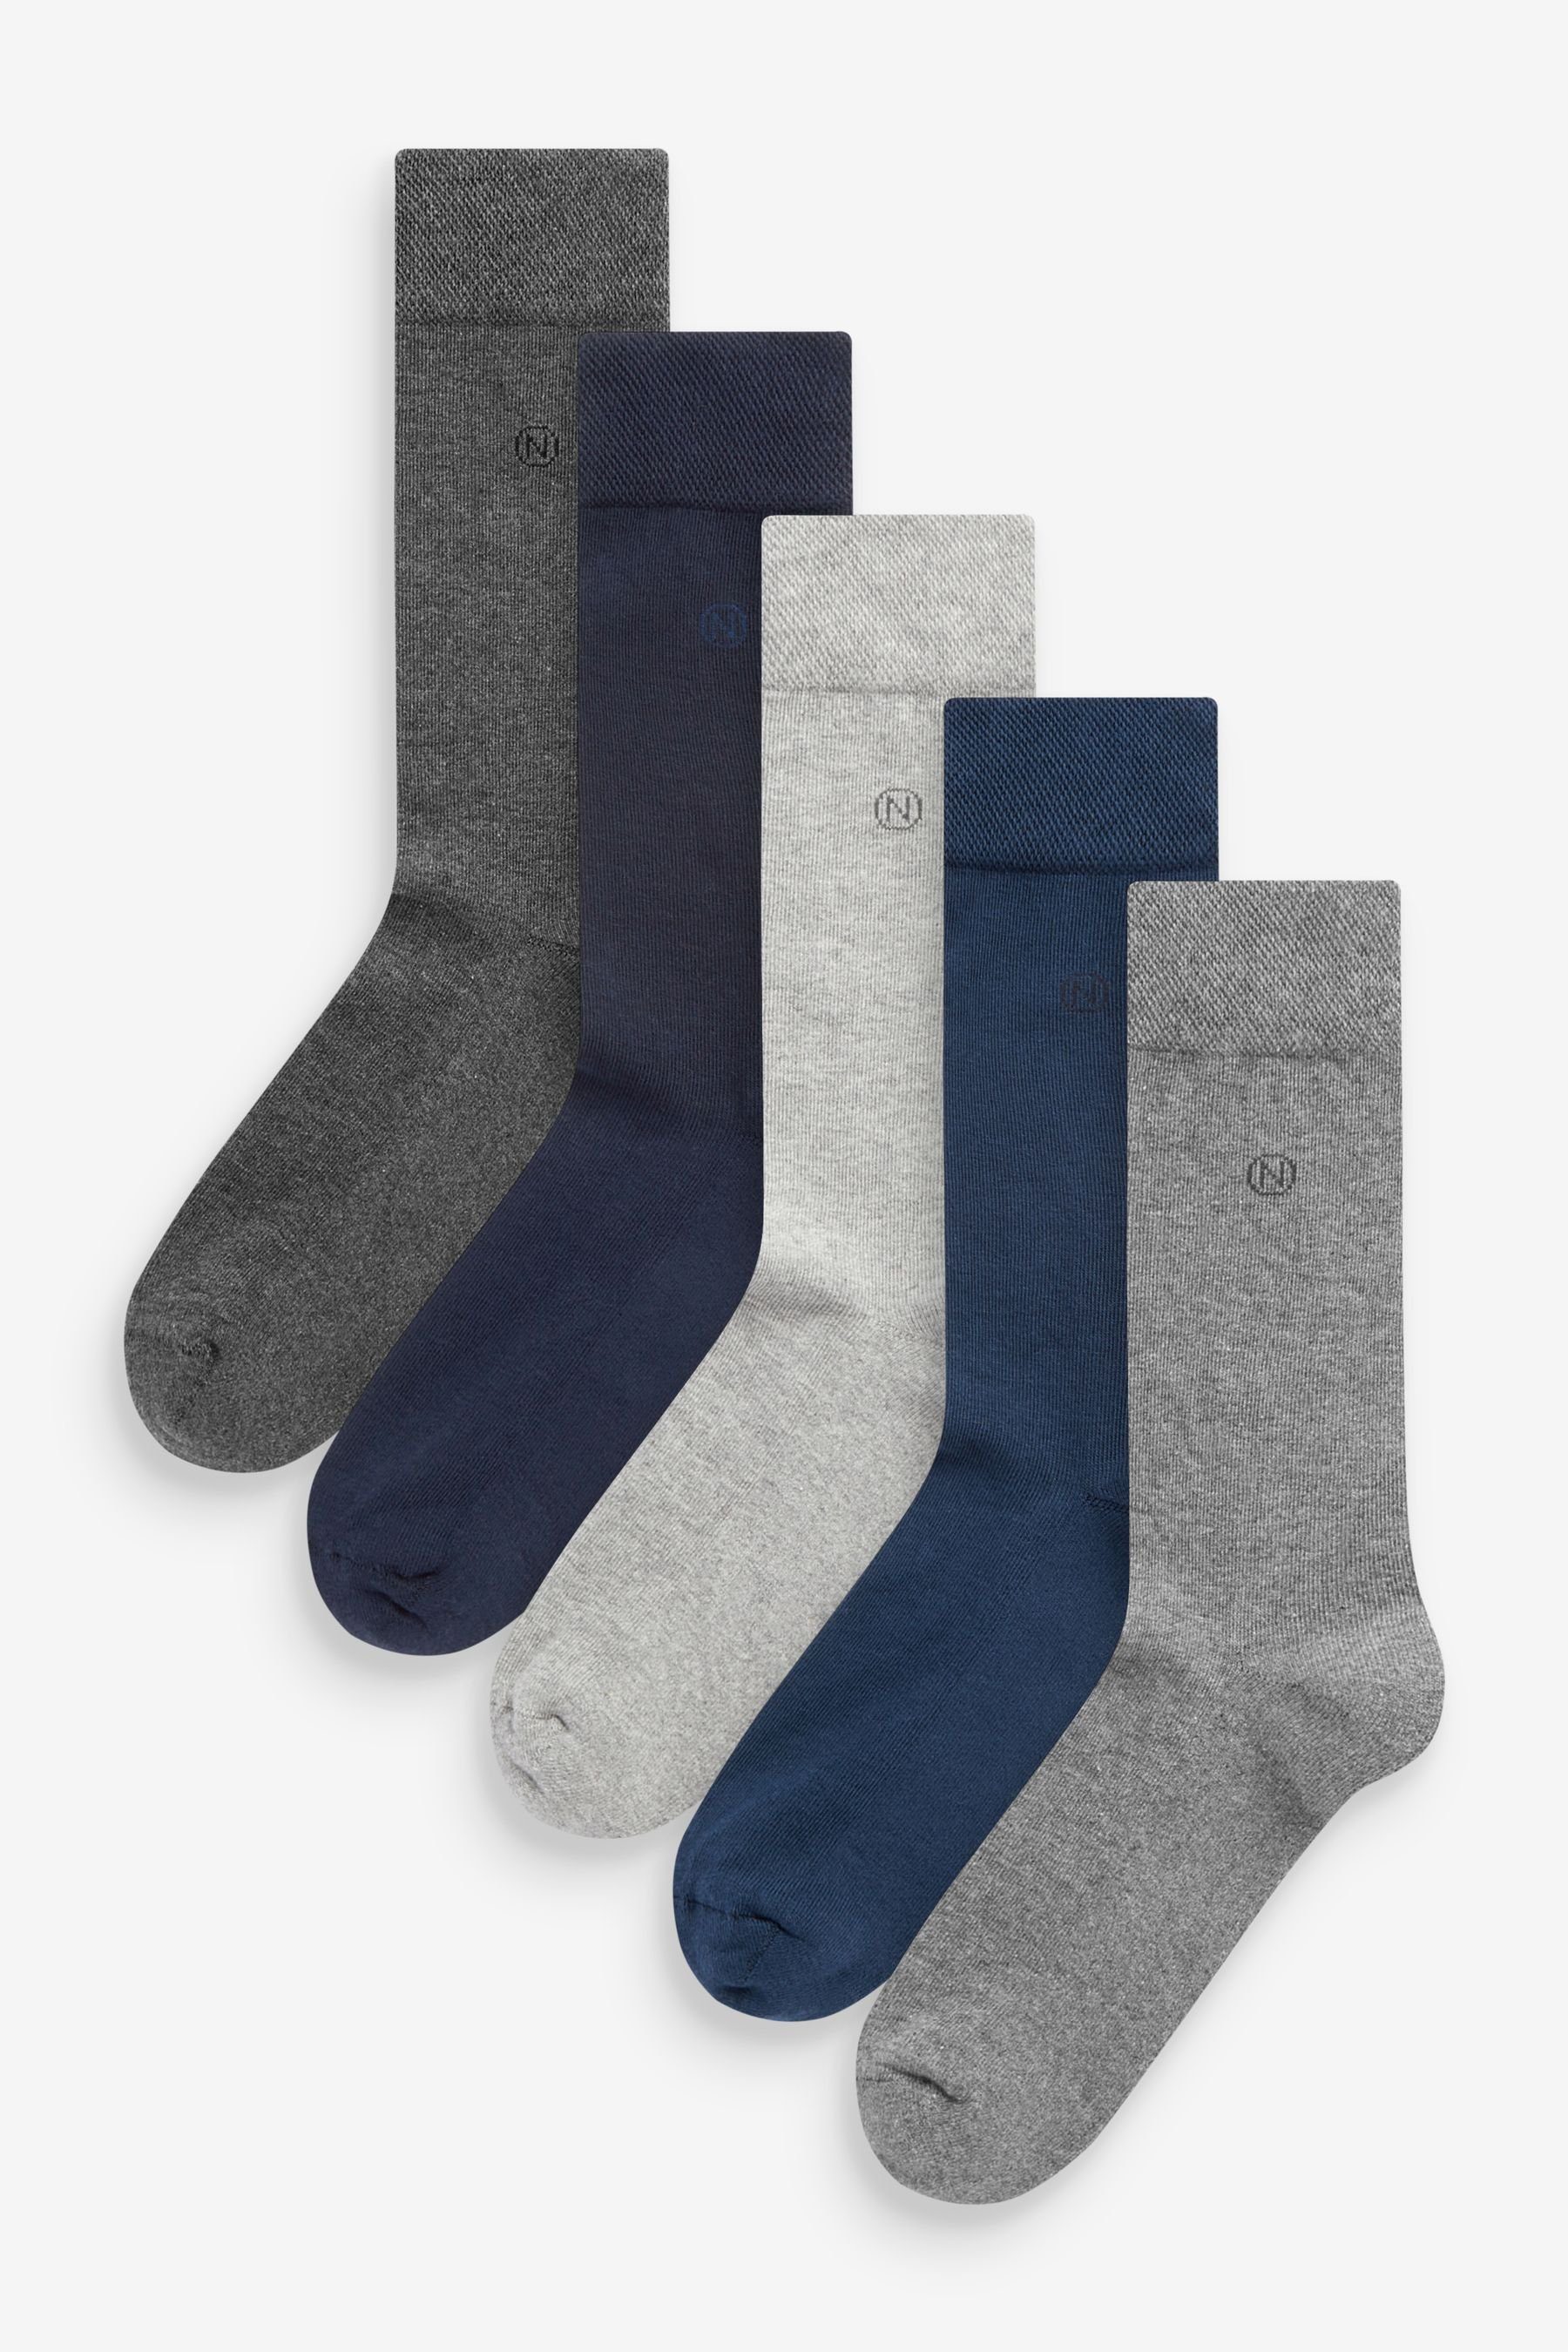 Next Kurzsocken 5er-Pack Socken mit gepolsterter Sohle (5-Paar) Navy/Grey